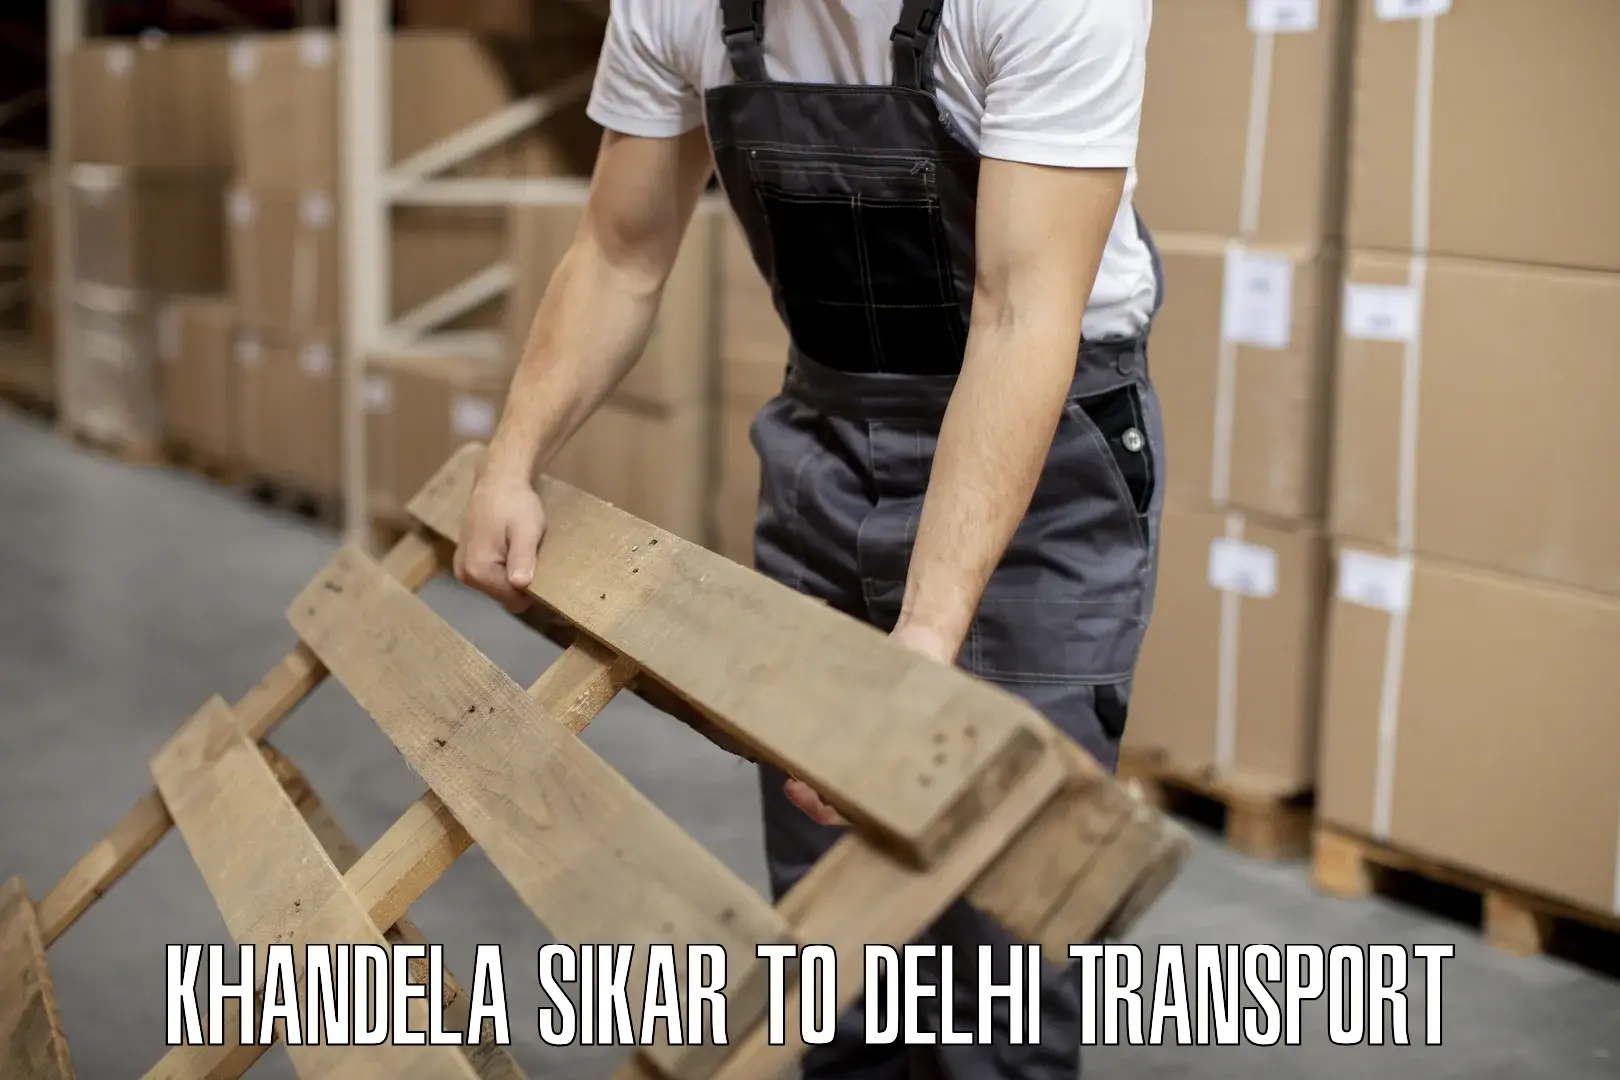 Truck transport companies in India in Khandela Sikar to Kalkaji